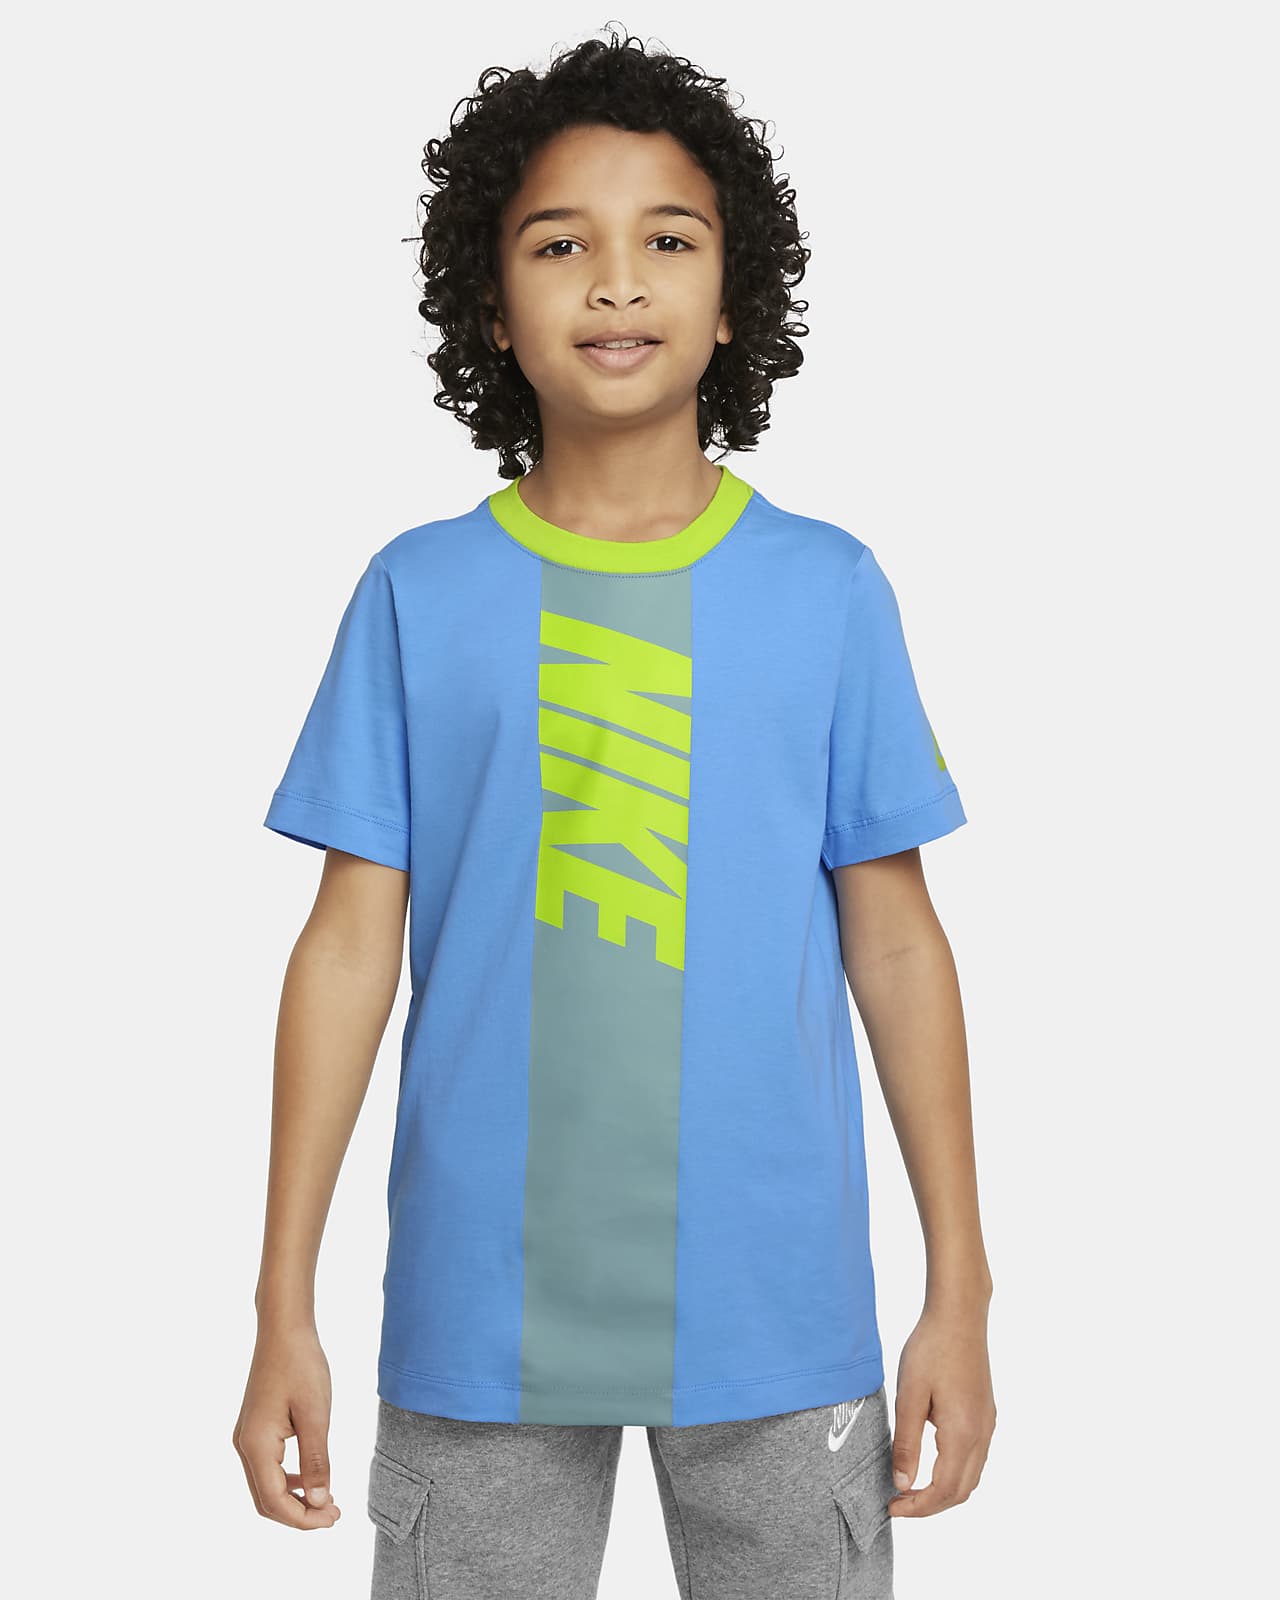 Playera para niños grandes Nike Sportswear